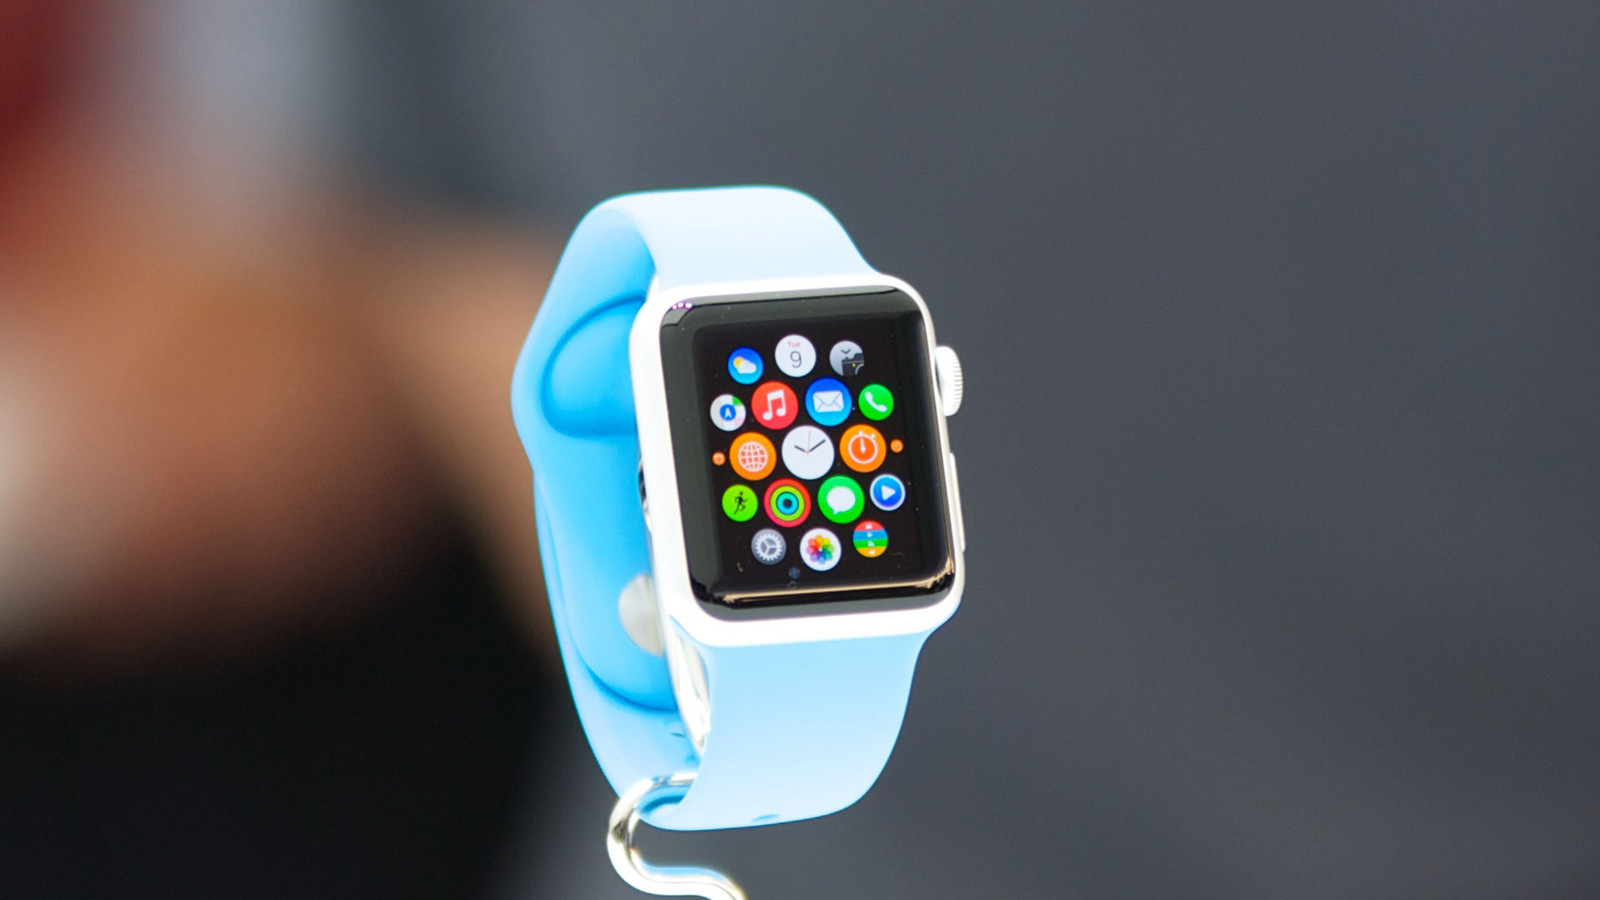 Функциональность Apple Watch продемонстрирована в серии новых промо-роликов